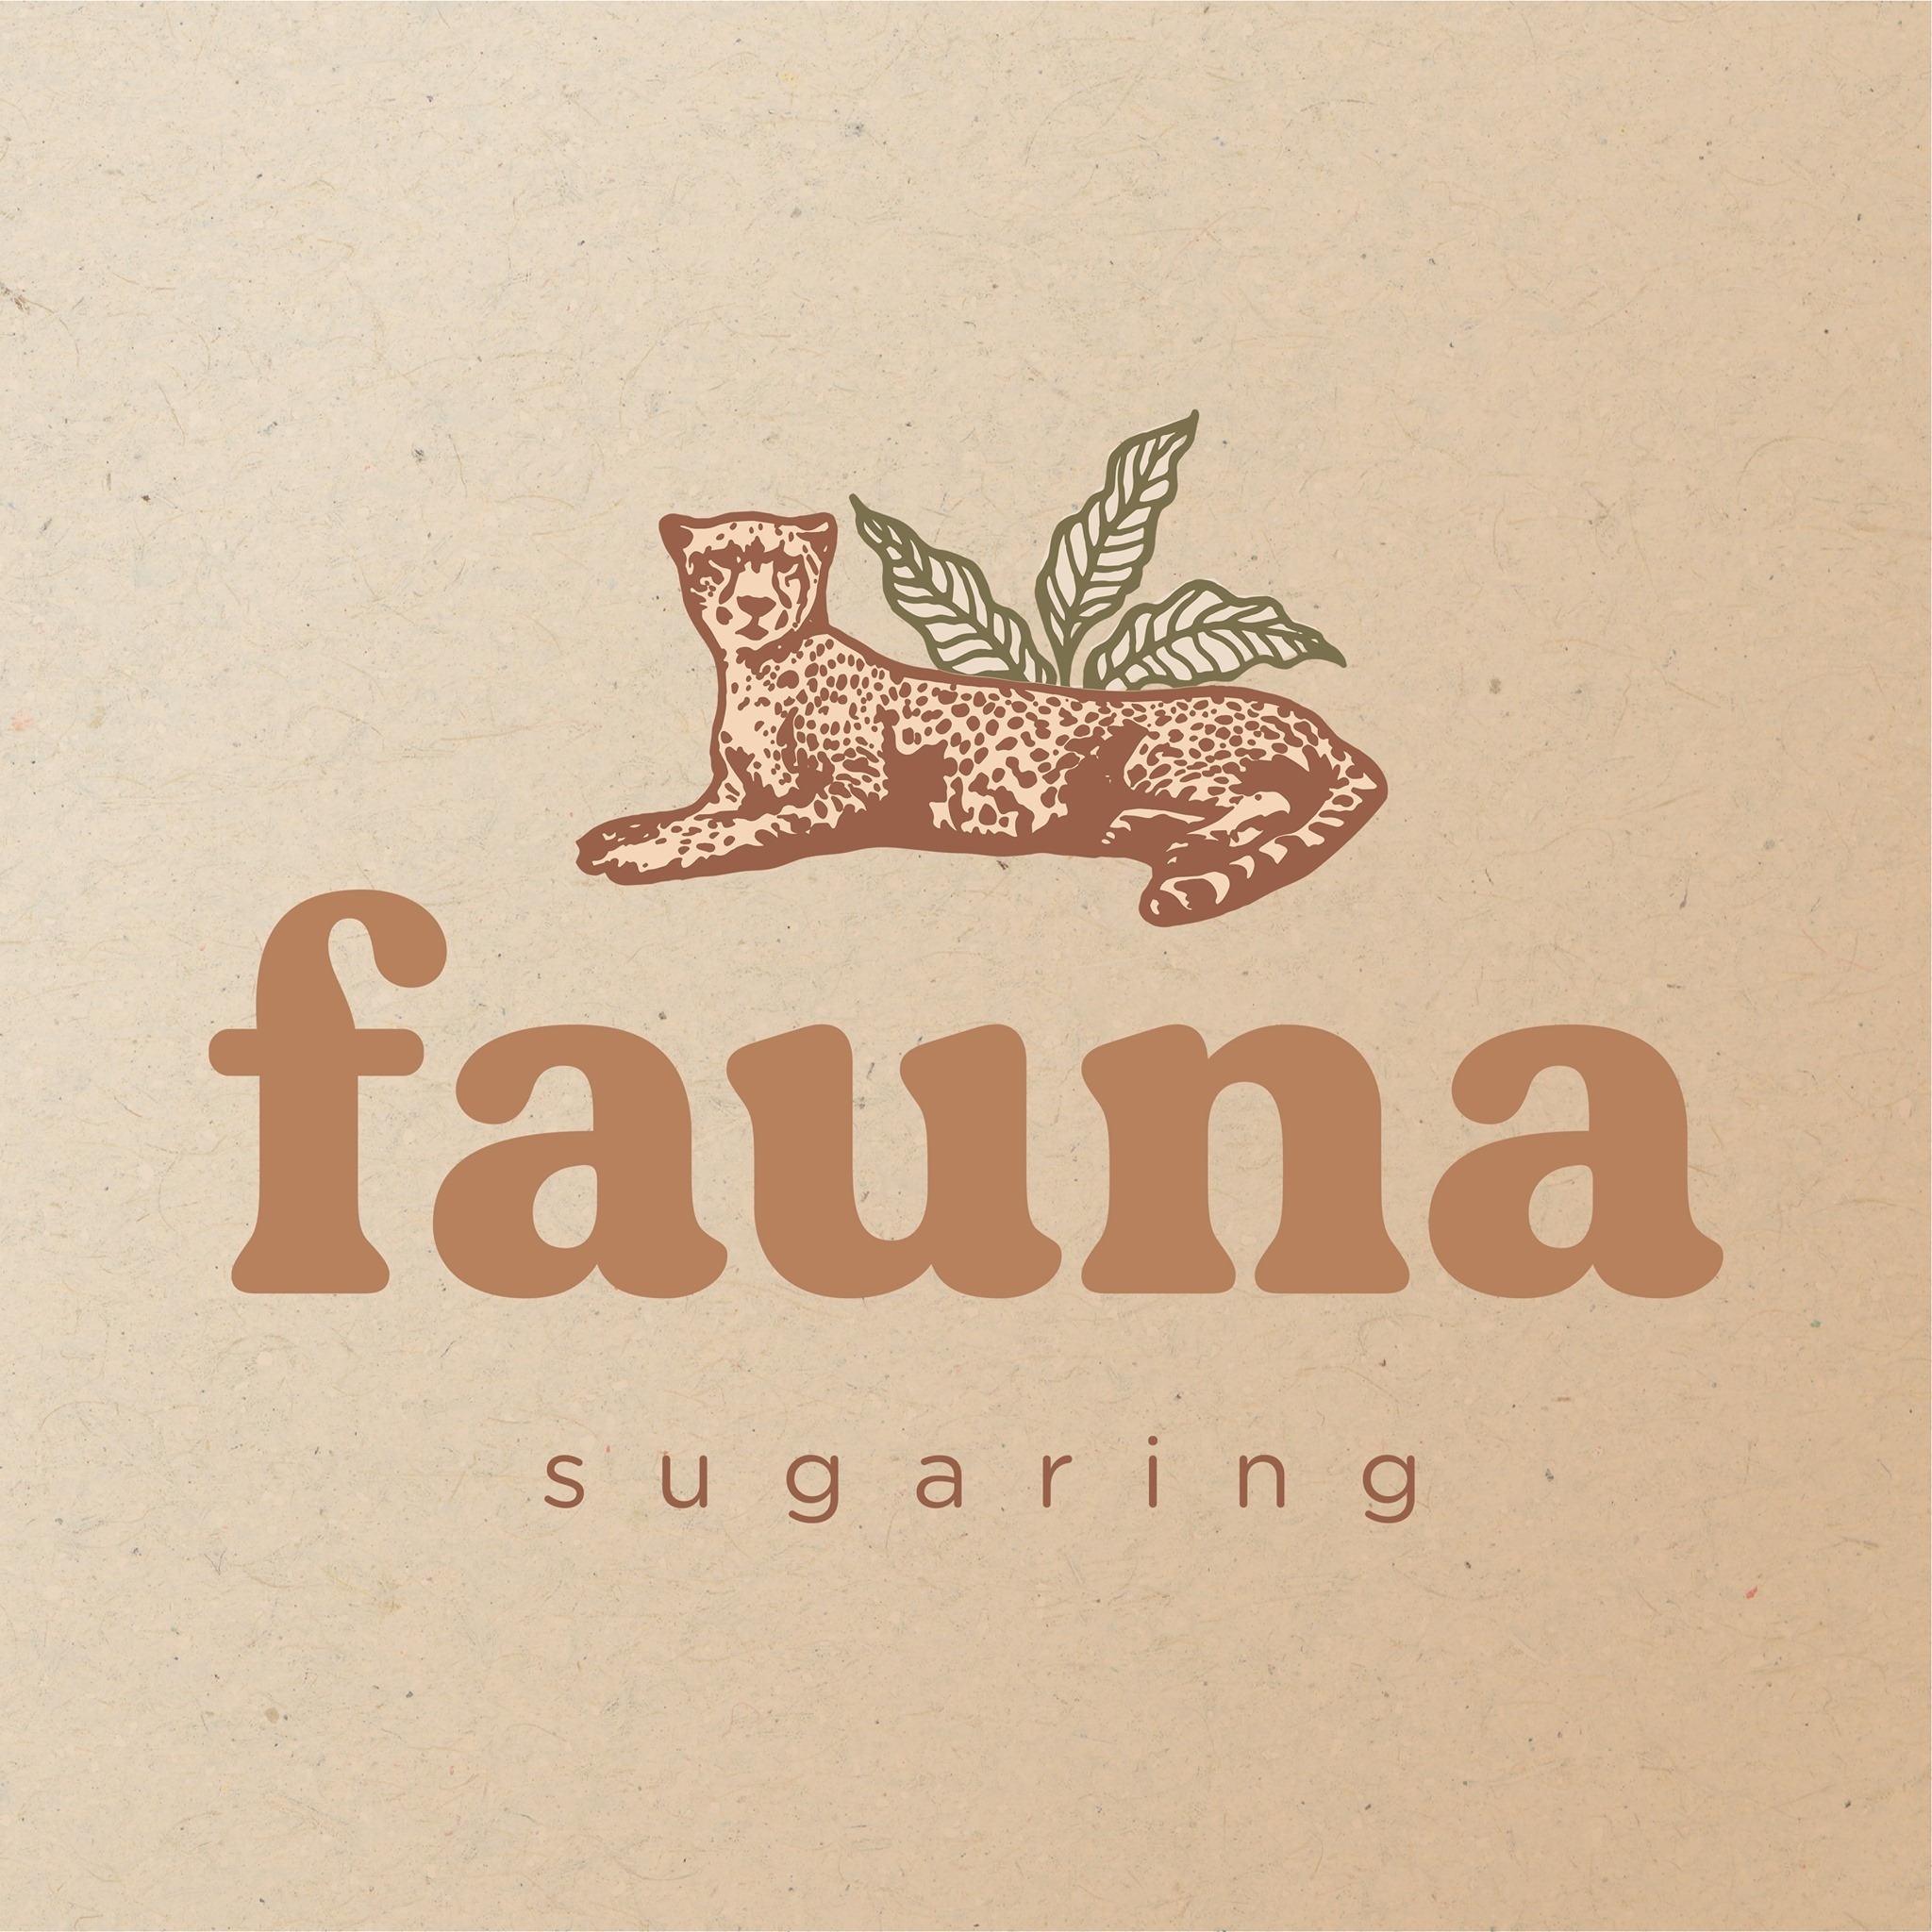 Fauna Sugaring Education